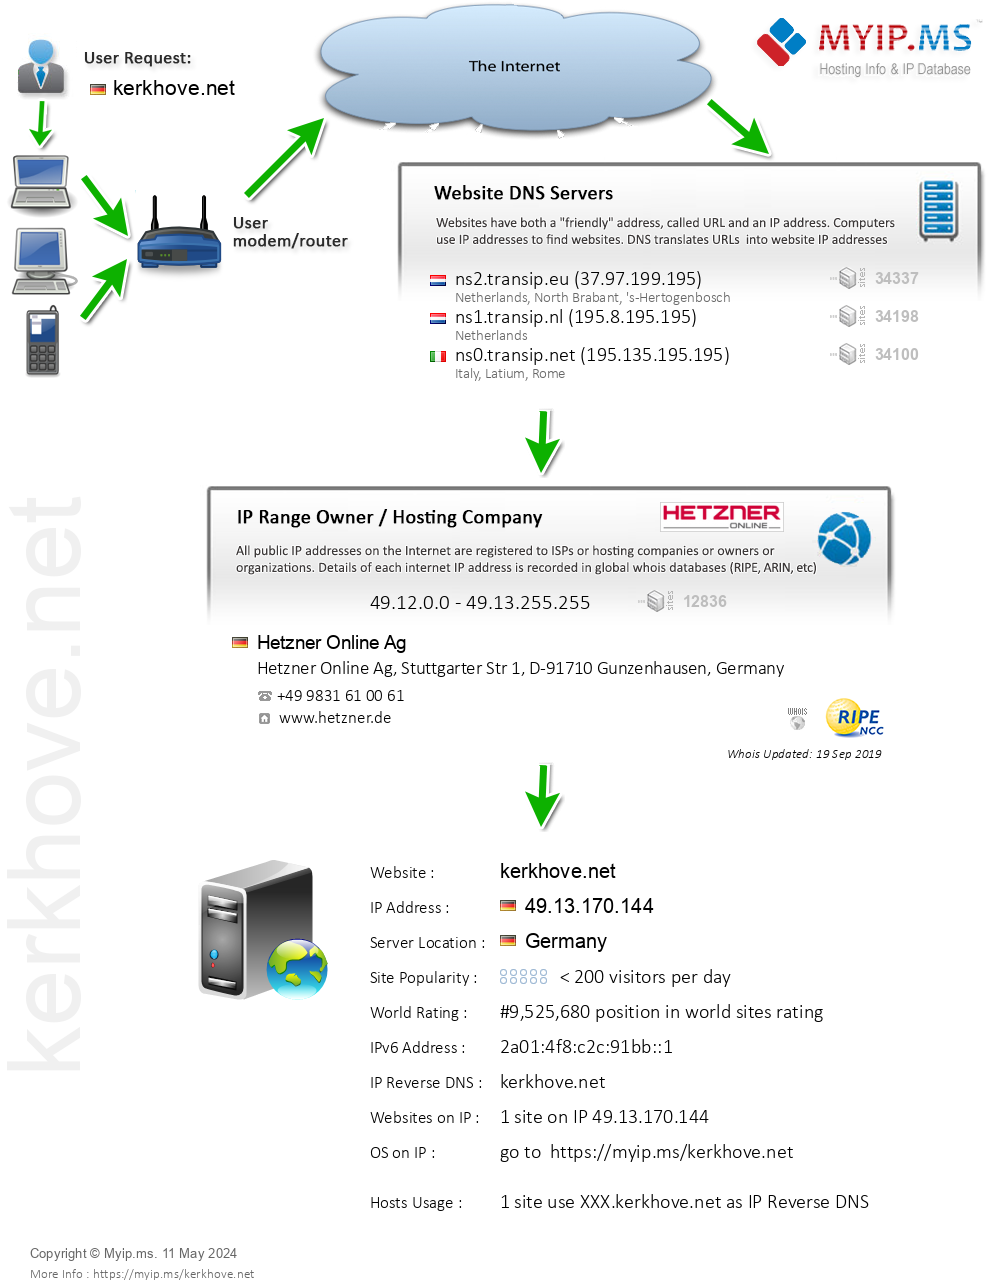 Kerkhove.net - Website Hosting Visual IP Diagram